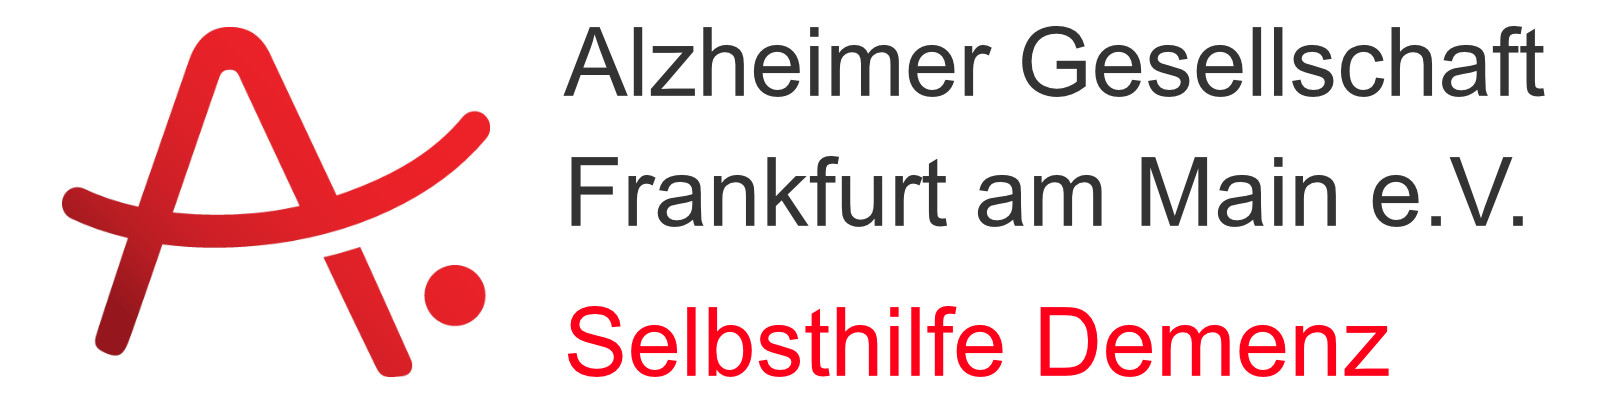 Alzheimer Gesellschaft Frankfurt am Main